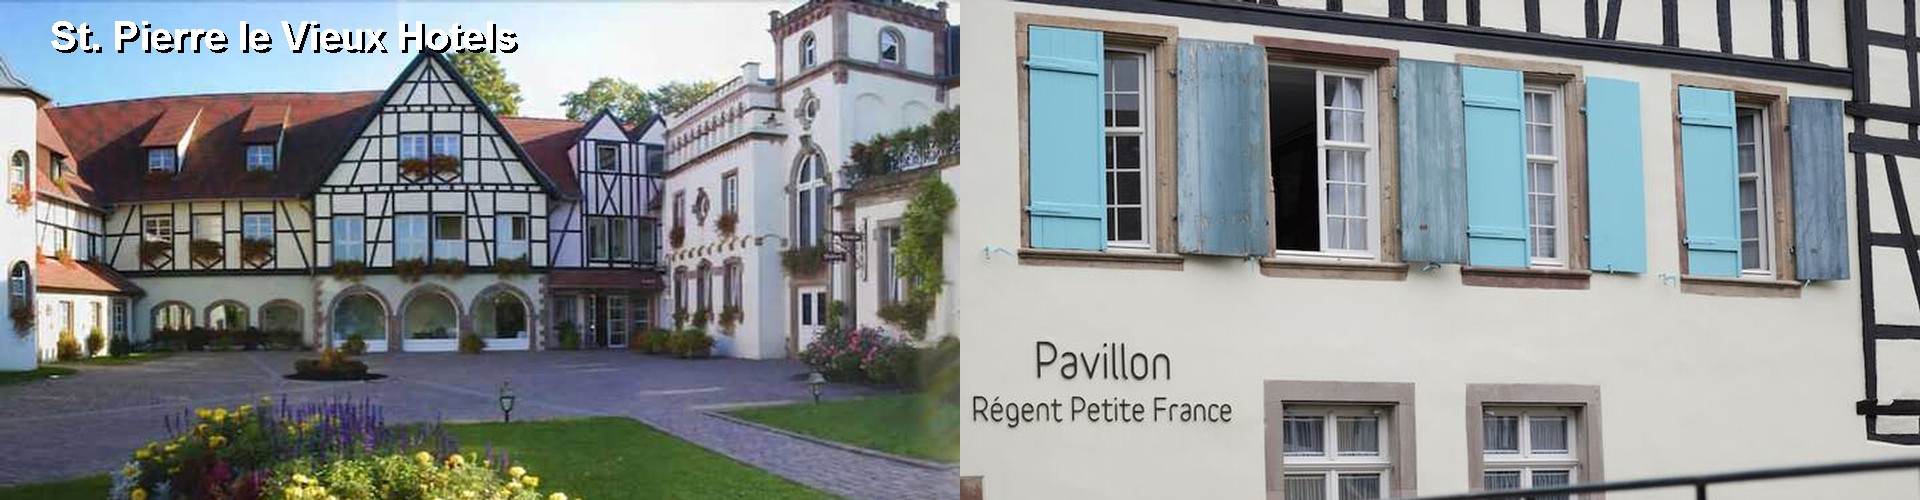 5 Best Hotels near St. Pierre le Vieux